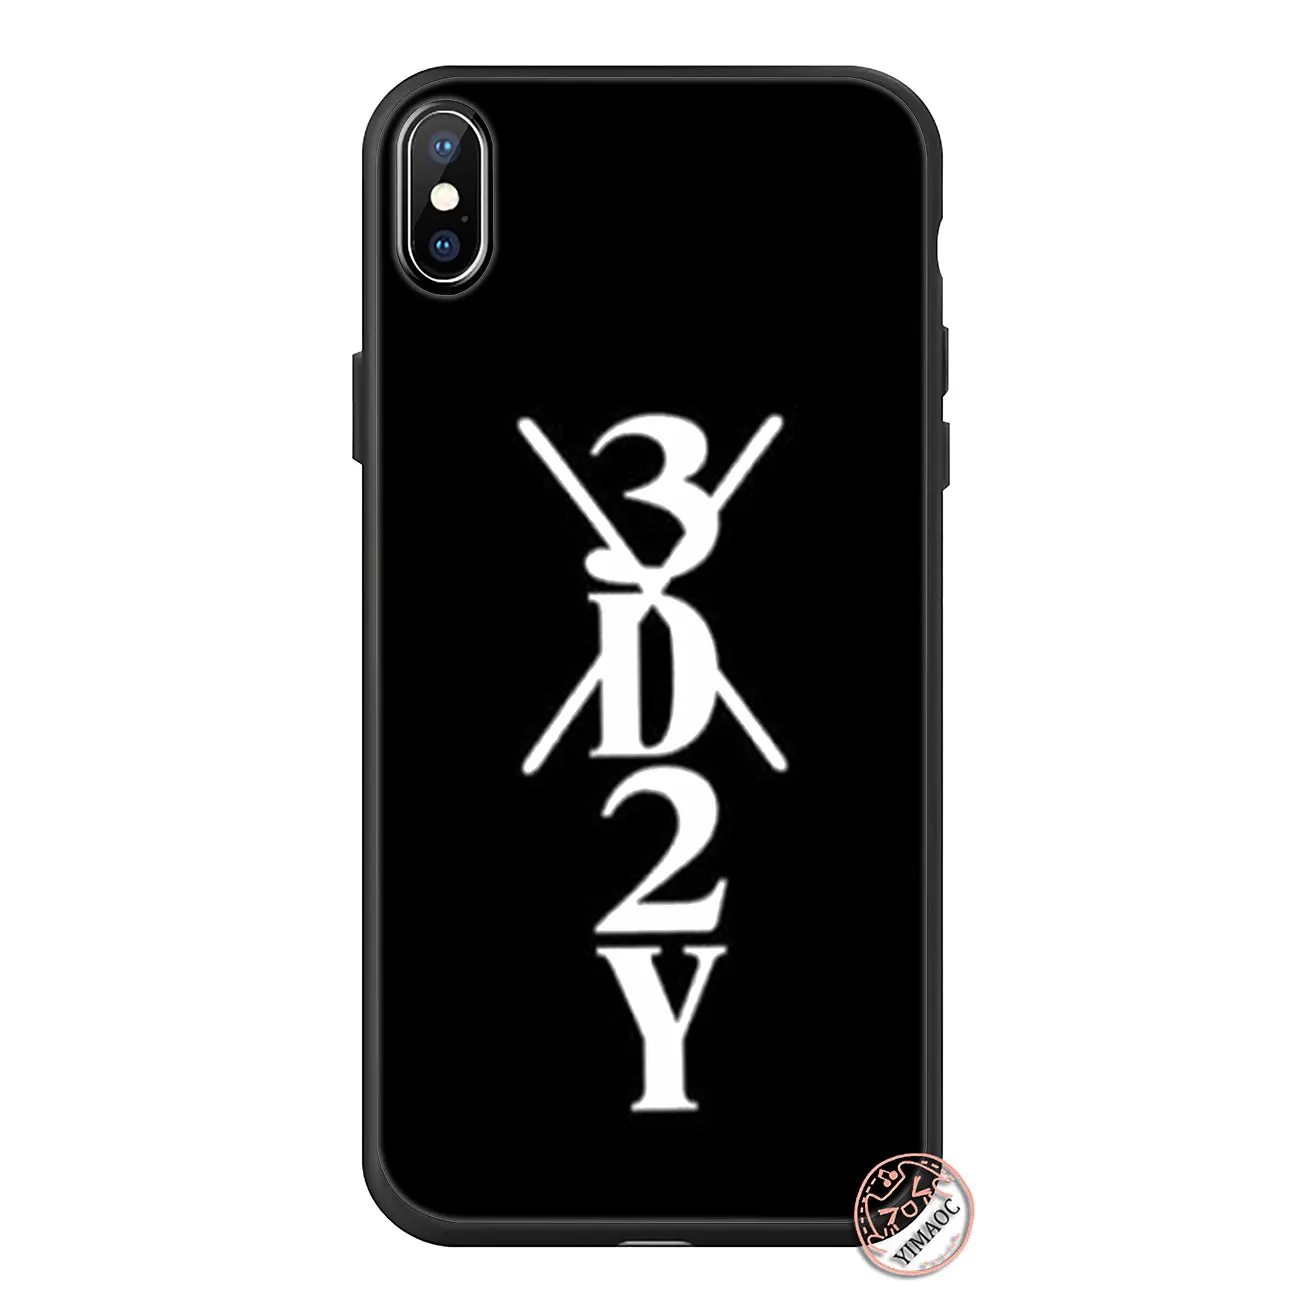 YIMAOC Зоро цельный Обезьяна D Luffy Мягкий силиконовый чехол для телефона для iPhone 11 Pro XS Max XR X 6 6S 7 8 Plus 5 5S SE 10 черный чехол - Цвет: 11